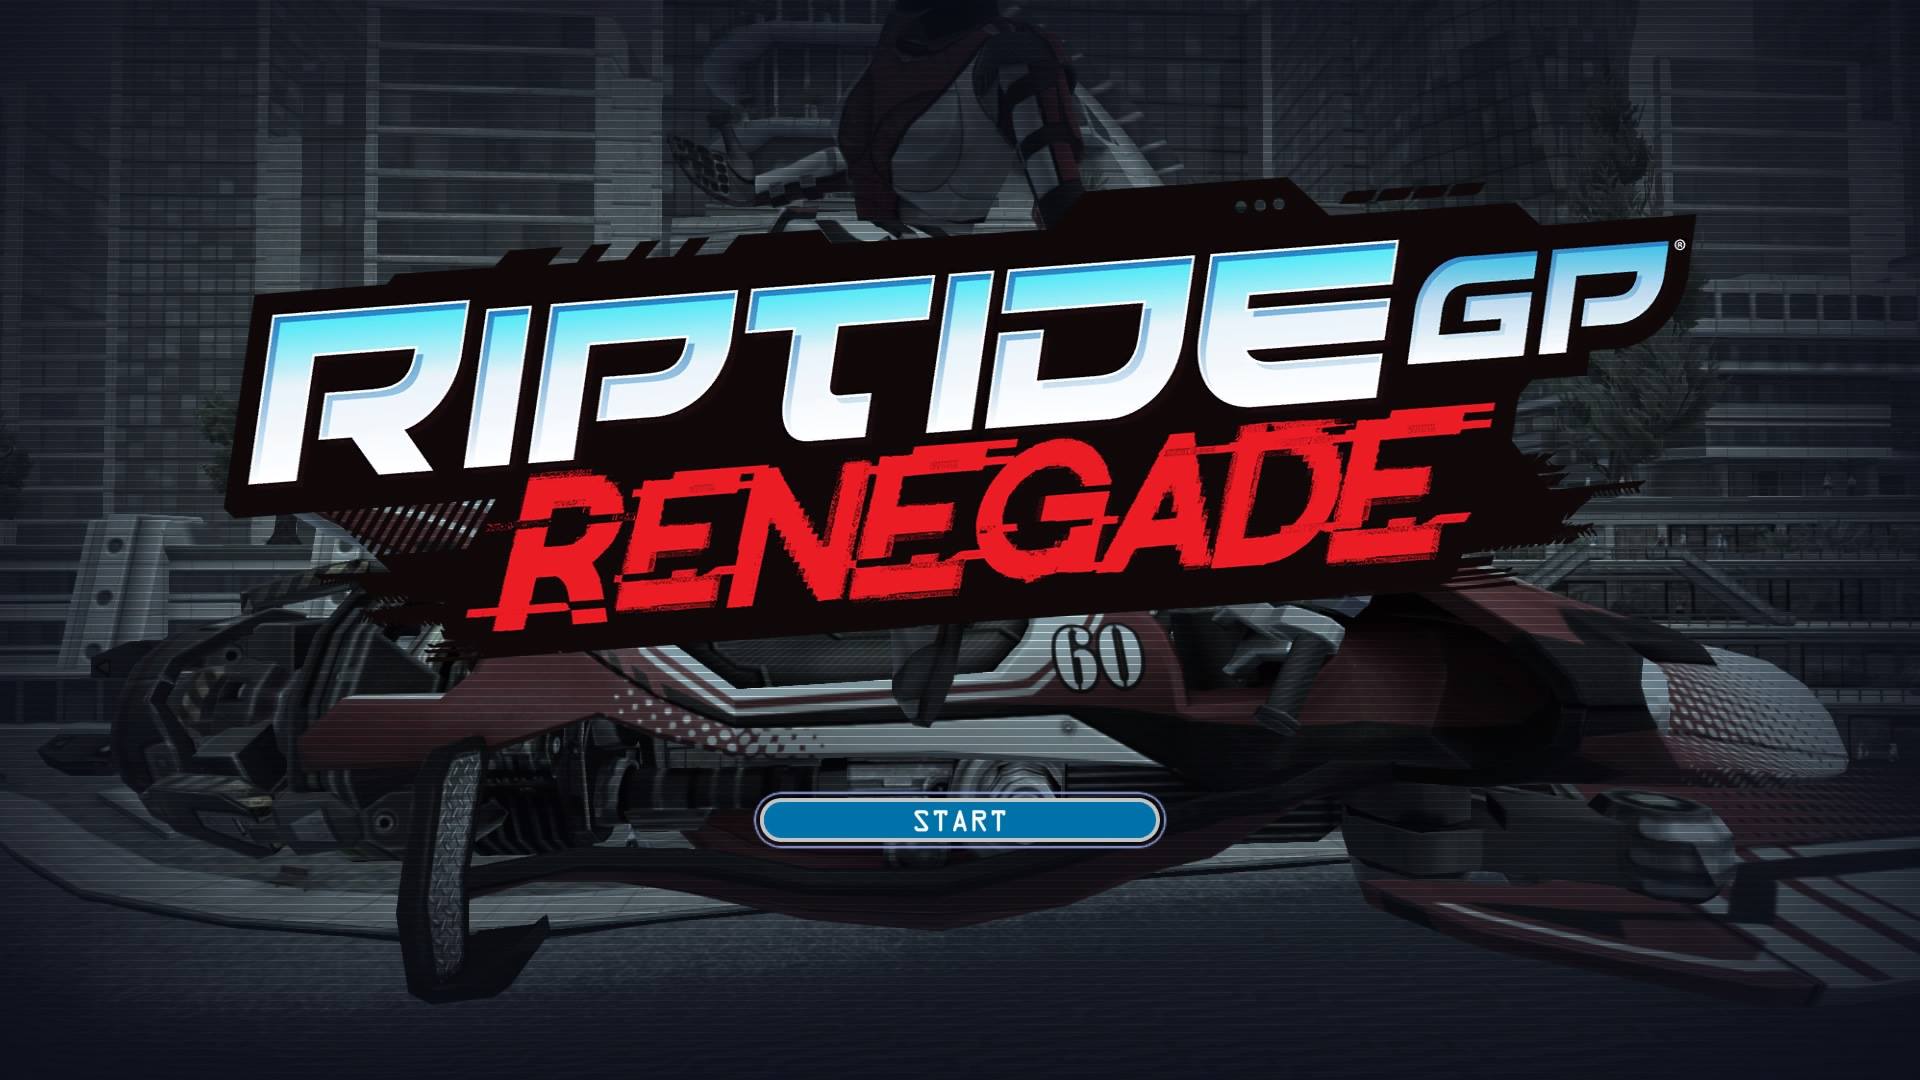 Review: Riptide GP Renegade - PS4